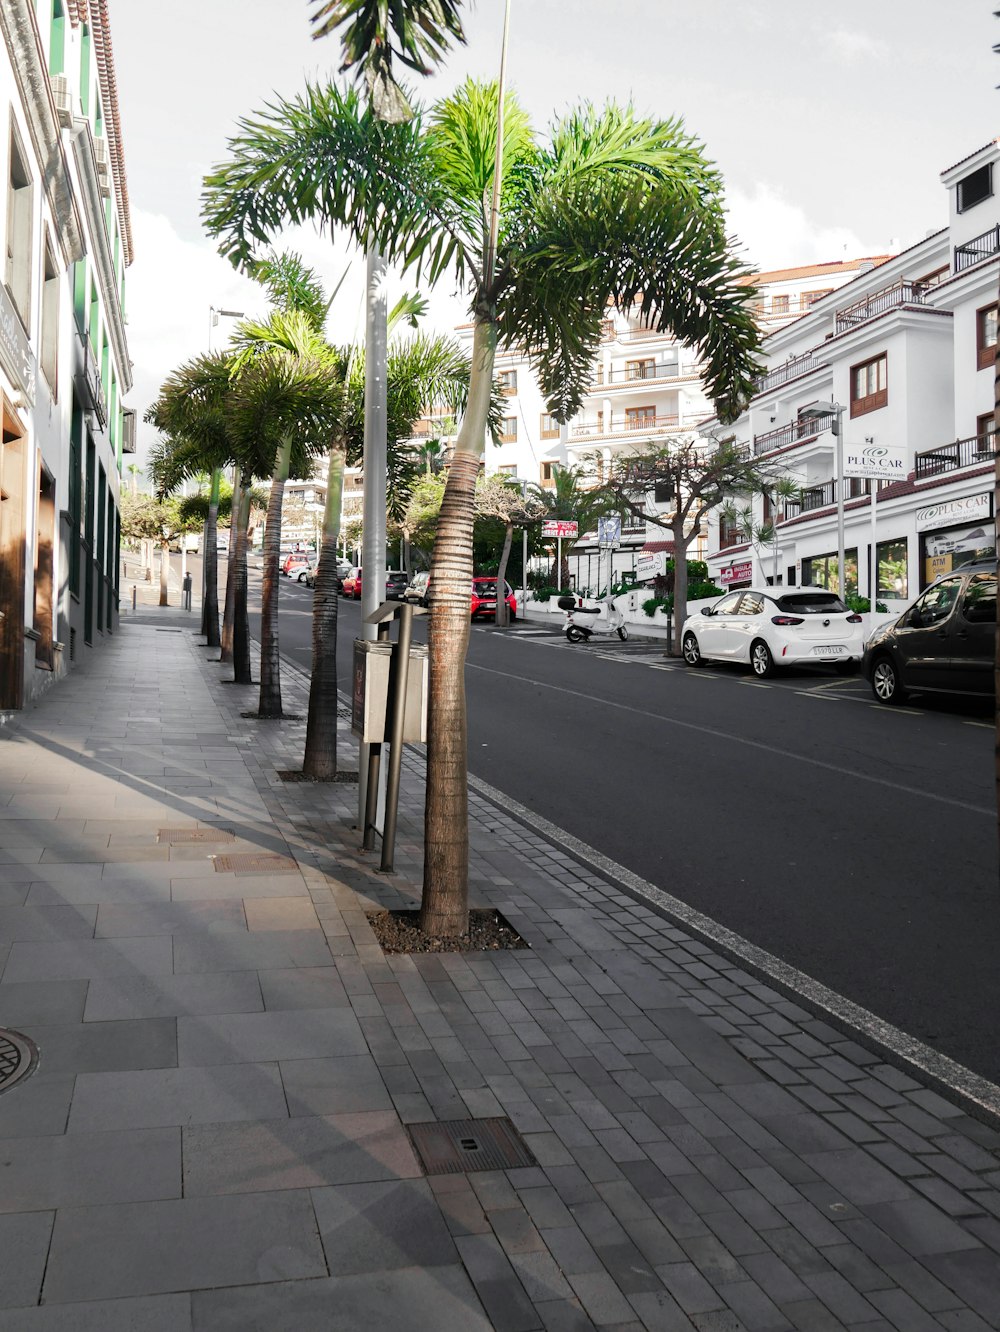 Una calle de la ciudad bordeada de palmeras y coches aparcados